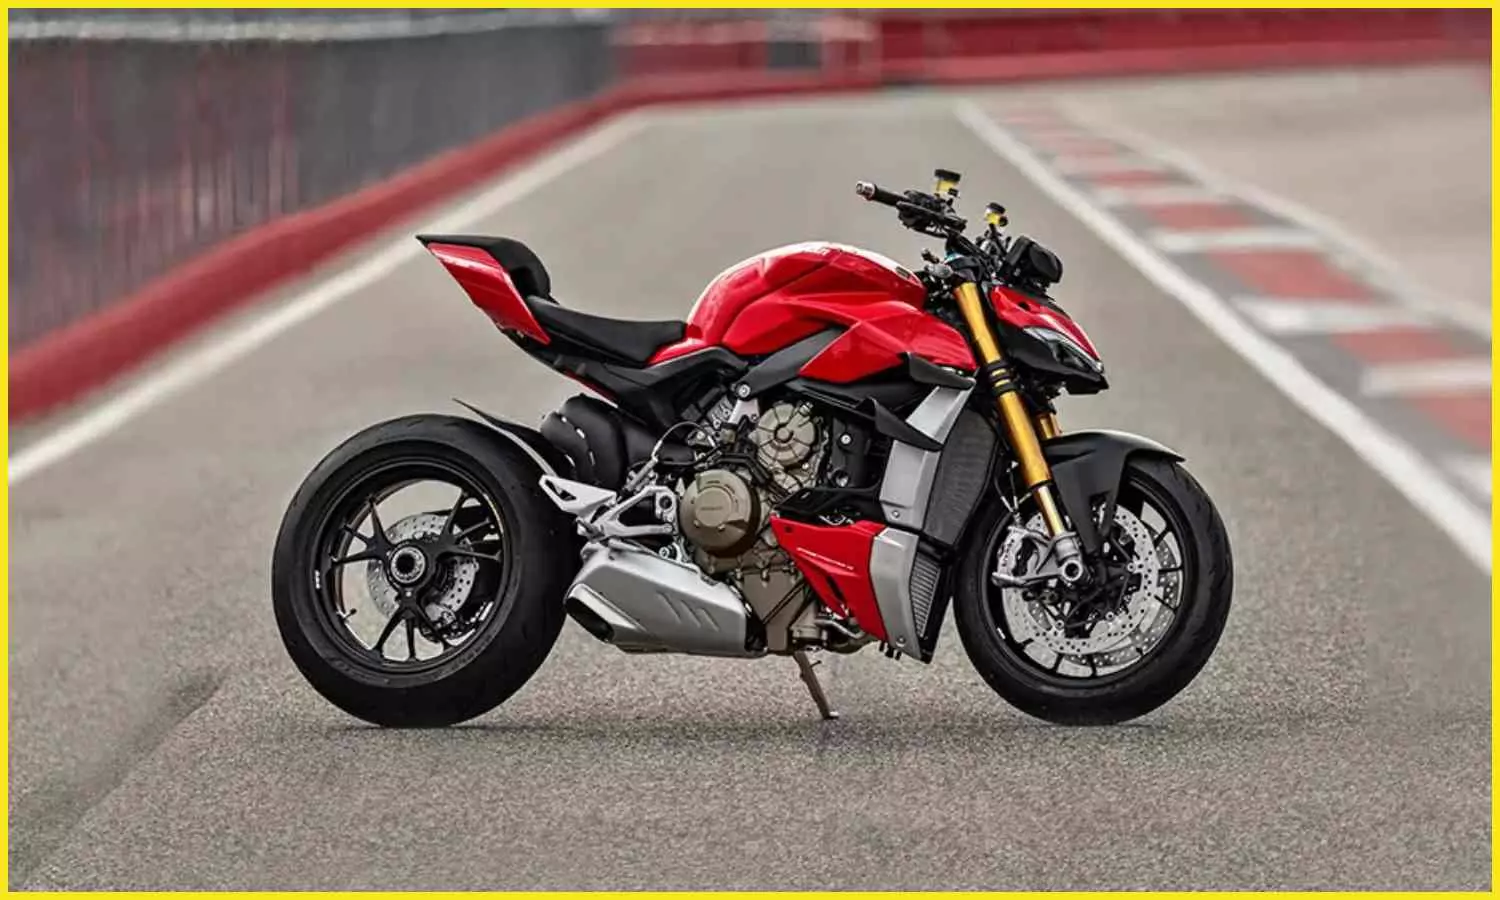 Ducati Streetfighter V4 S Bike Review